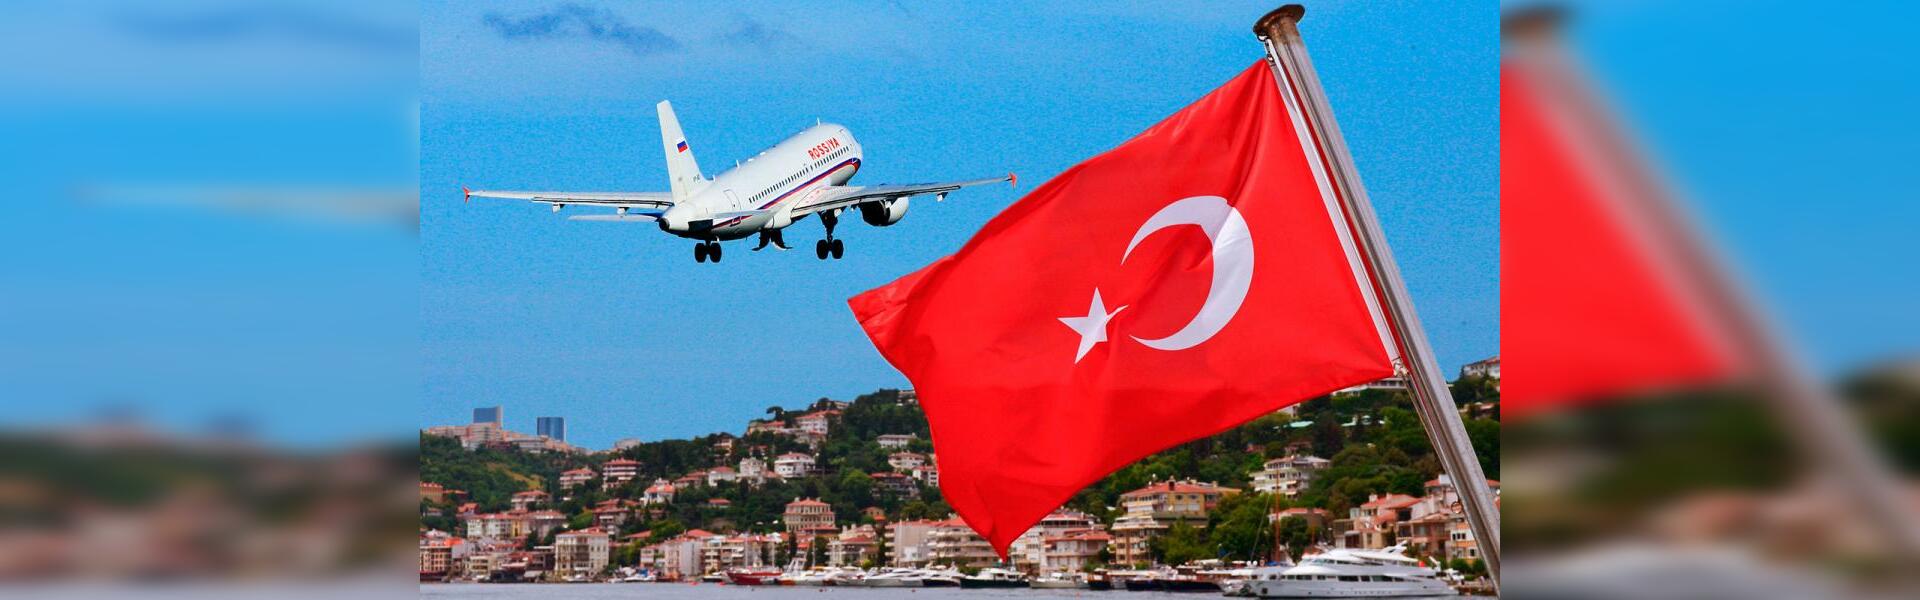 Россия летает в турцию. Самолет Турция. Полет в Турцию. Турецкий флаг и самолет. Возобновление авиасообщения России с Турцией.